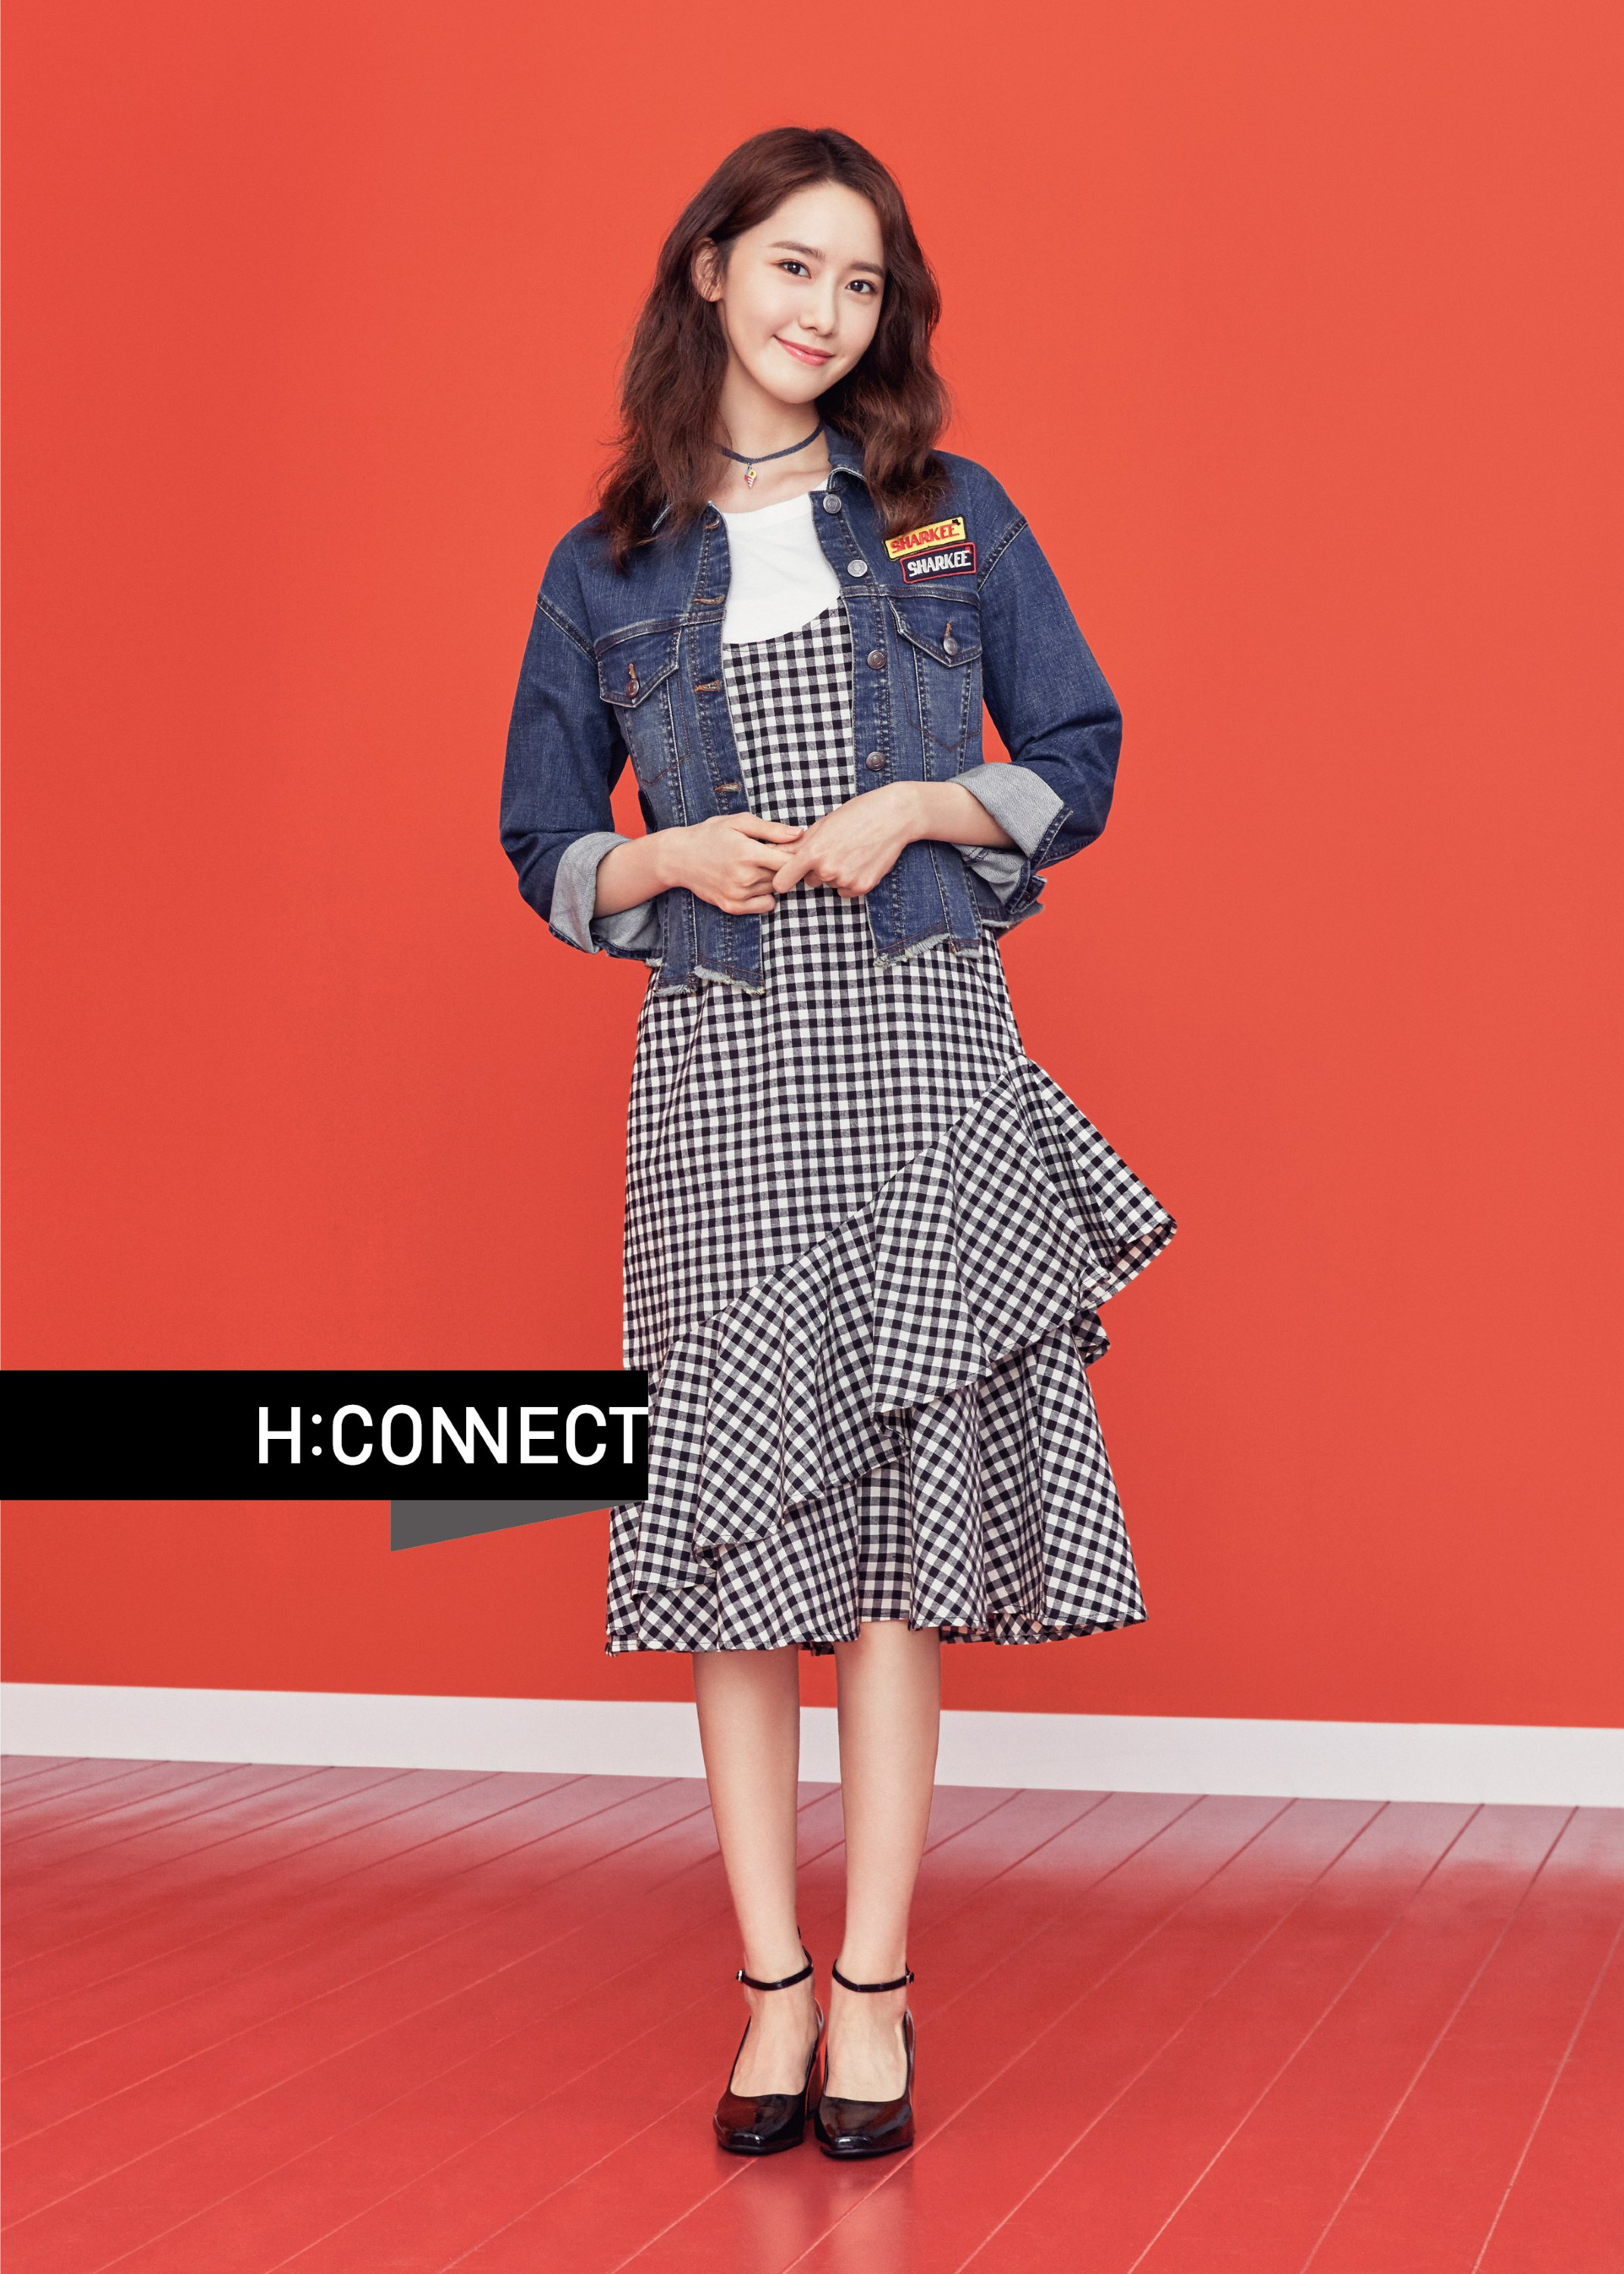 [OTHER][27-07-2015]YoonA trở thành người mẫu mới cho dòng thời trang "H:CONNECT" - Page 7 C8aHdNM1FY-3000x3000